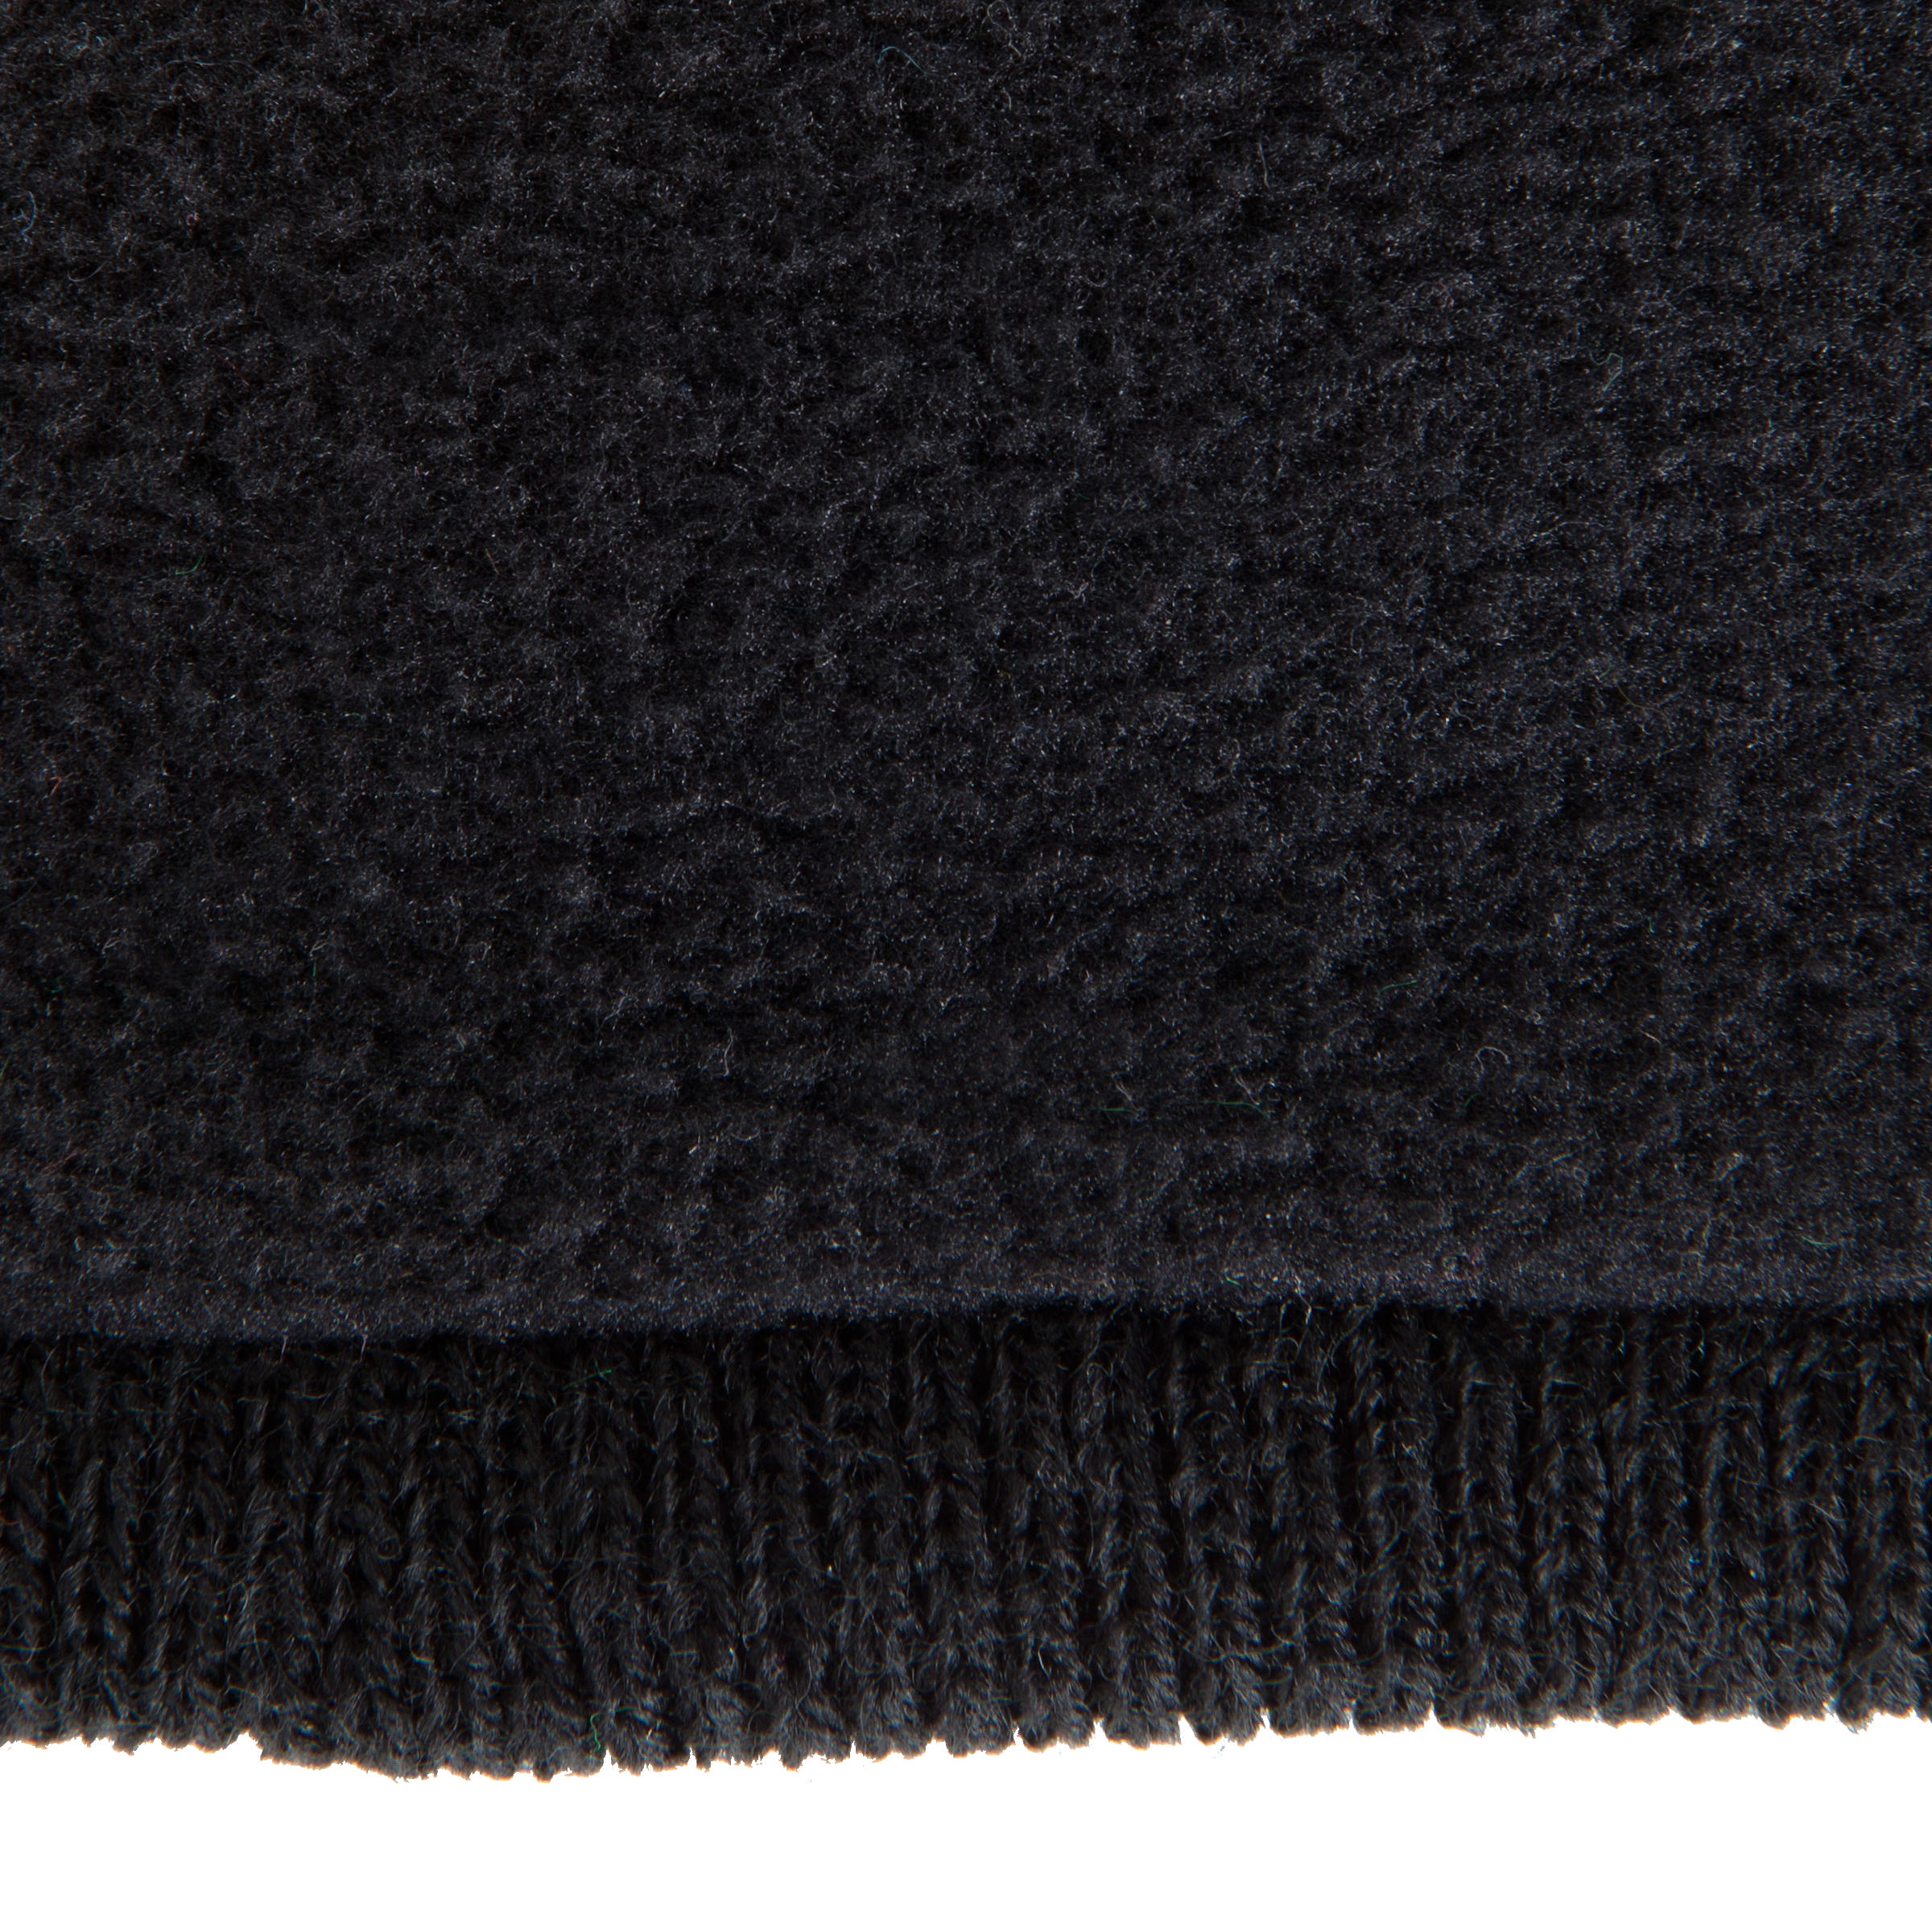 Keepwarm Kids' Fleece-Lined Hat - Black 7/8